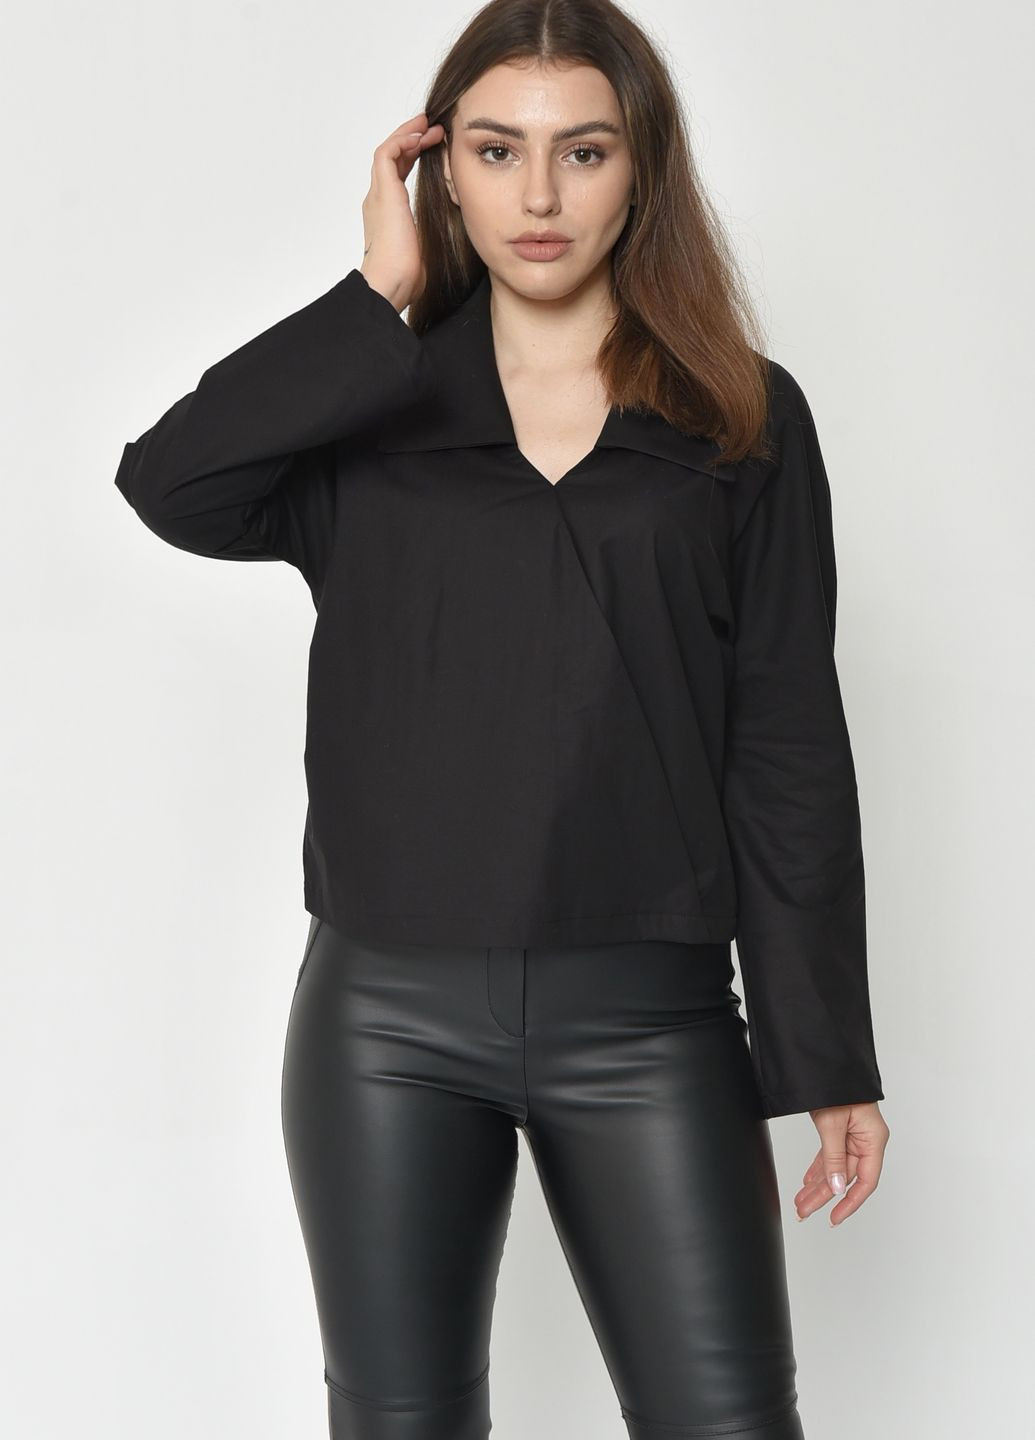 Черная летняя блуза женская черного цвета на запах Let's Shop